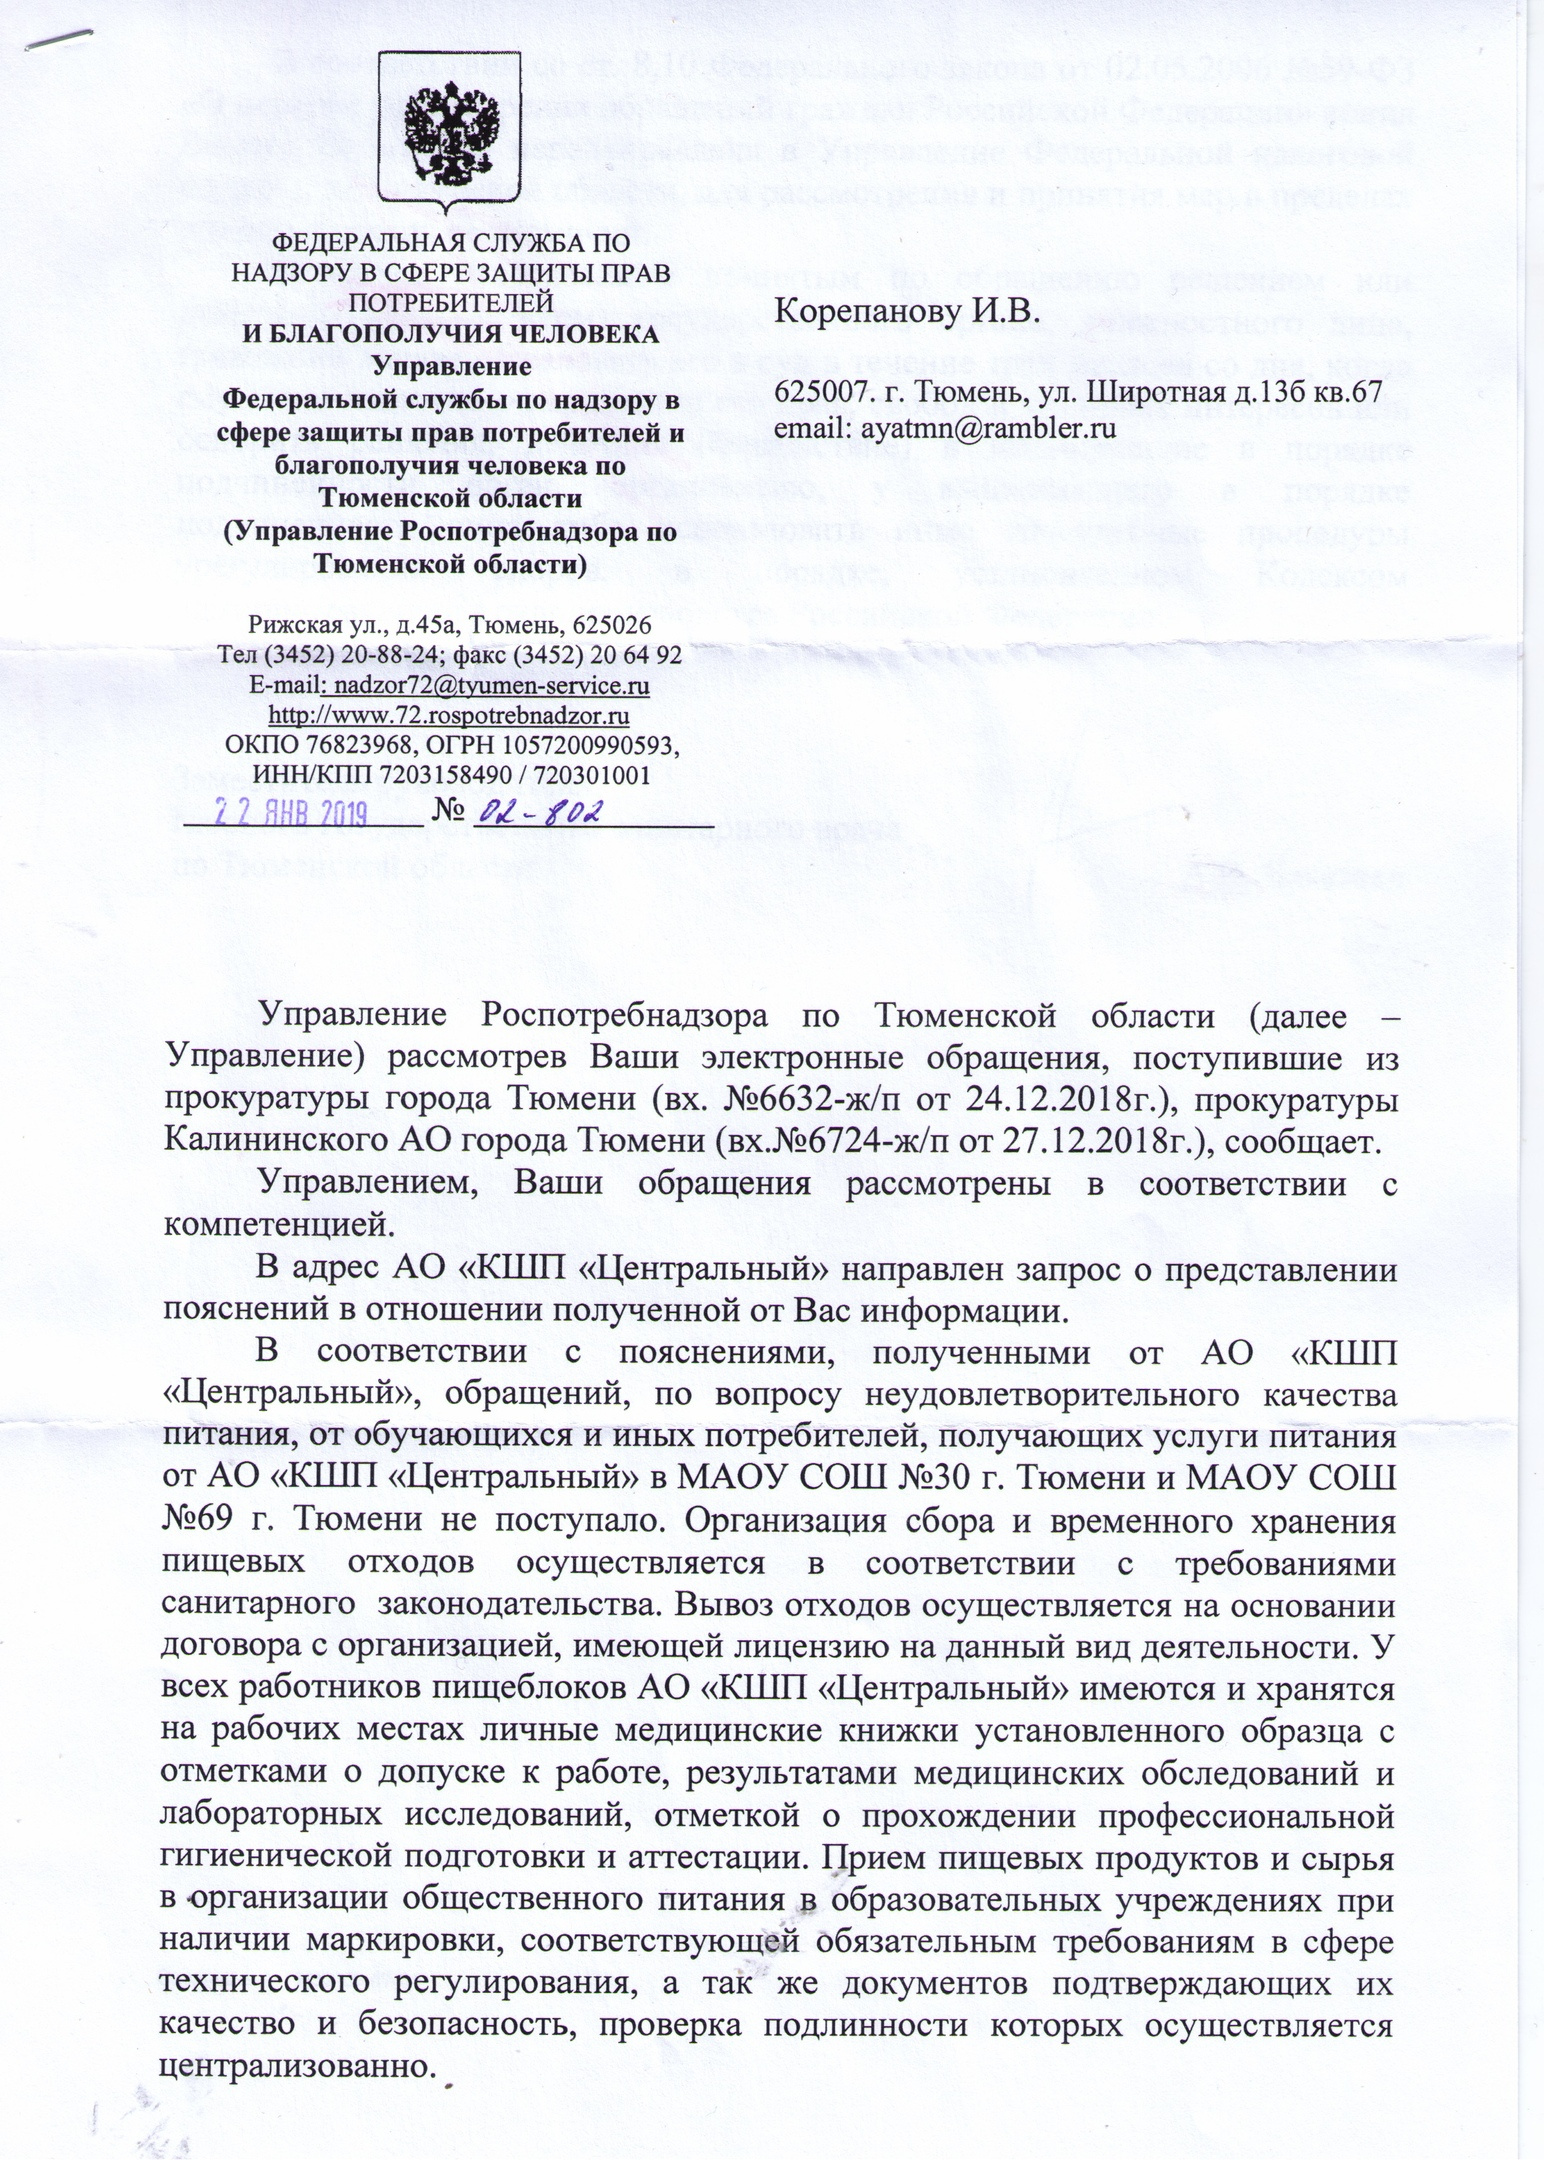 По результатам проверки Роспотребнадзора, «КШП "Центральный"» работает без нарушений